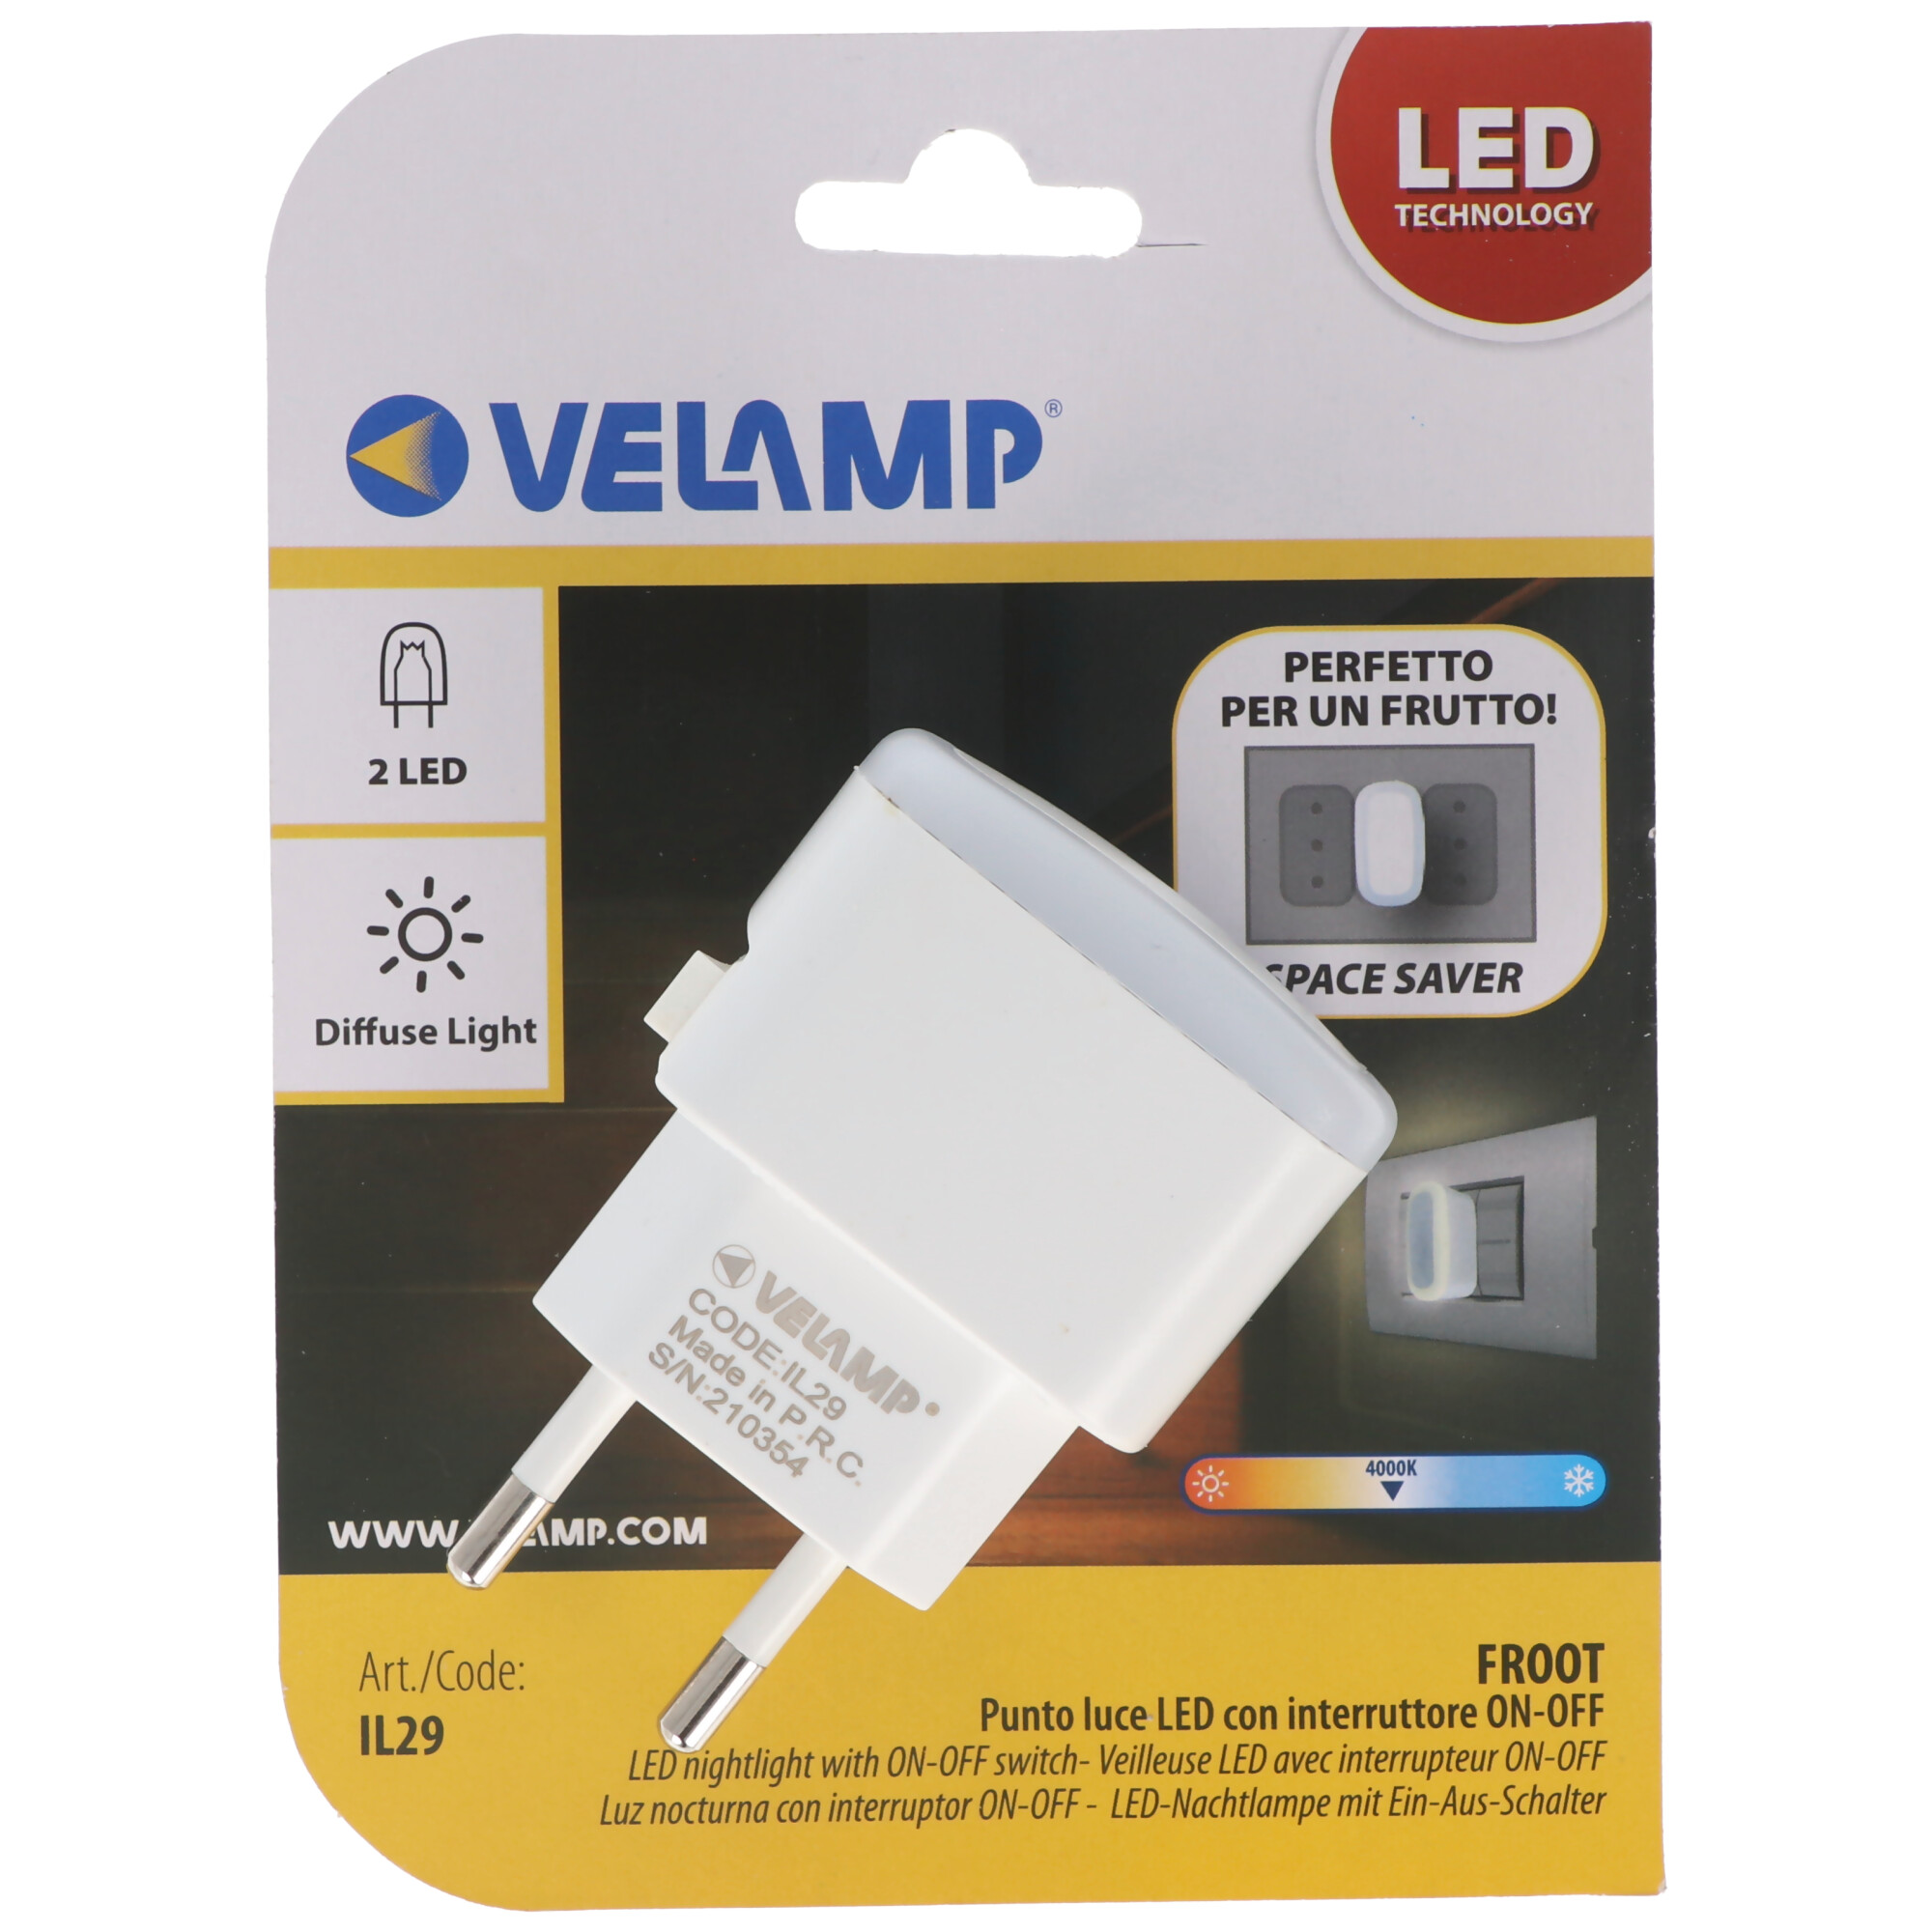 Velamp FROOT, LED-Nachtlicht mit EIN/AUS-Schalter, extra kompakt, vertikale Buchse, weiß